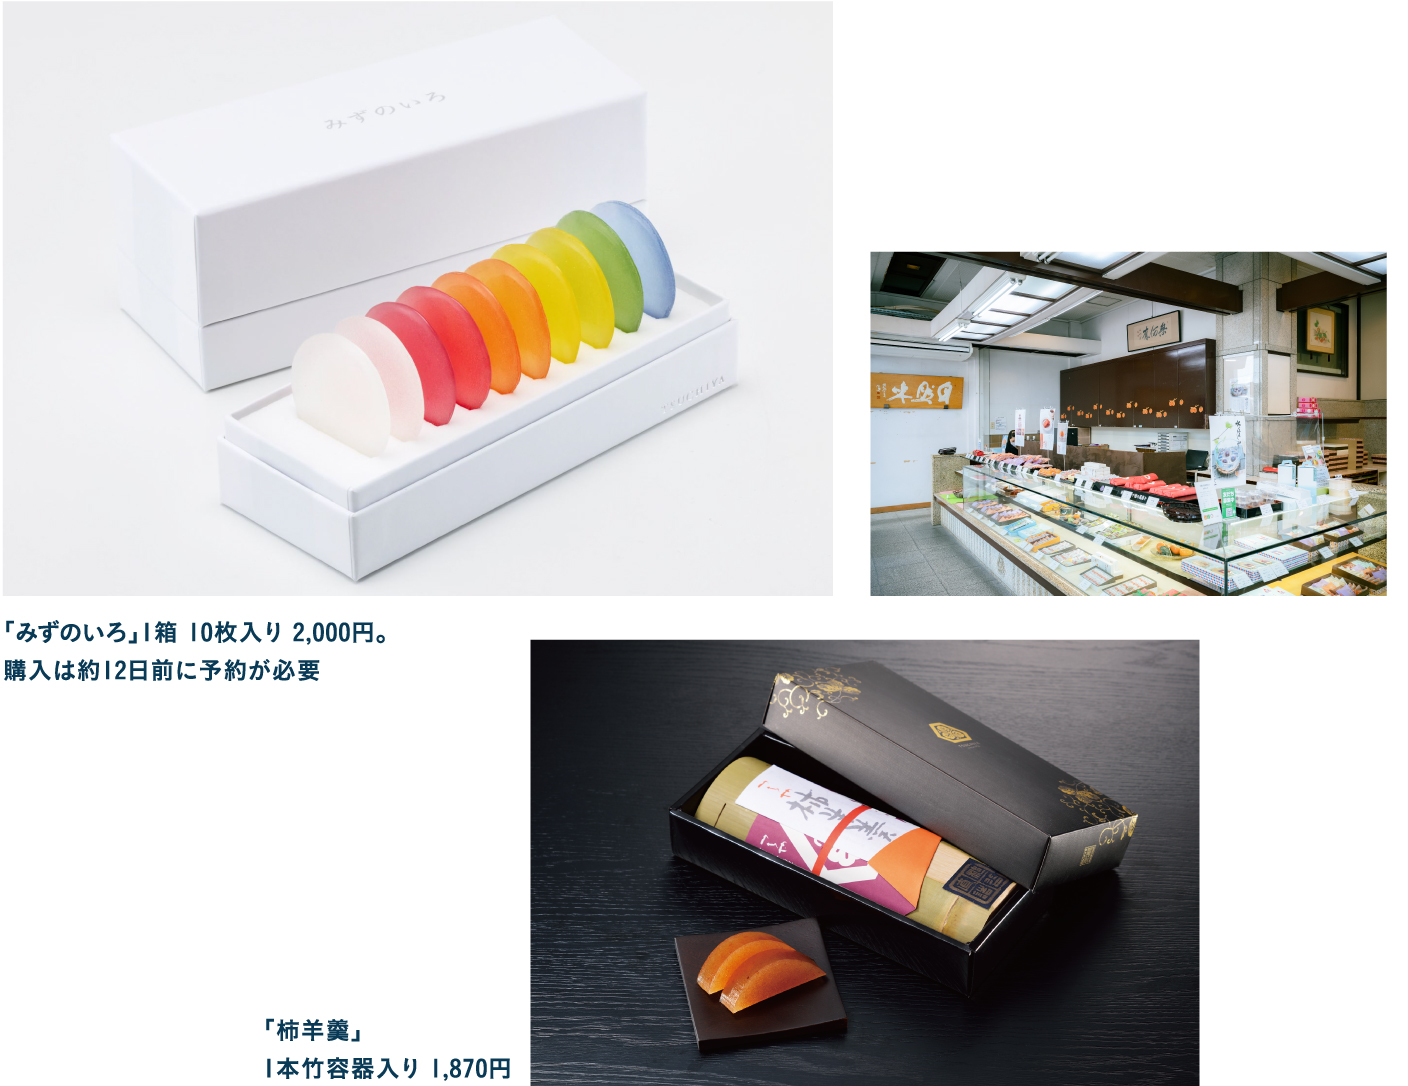 「水の都」のお土産は御菓子つちや大垣駅前店のカラフルな「みずのいろ」